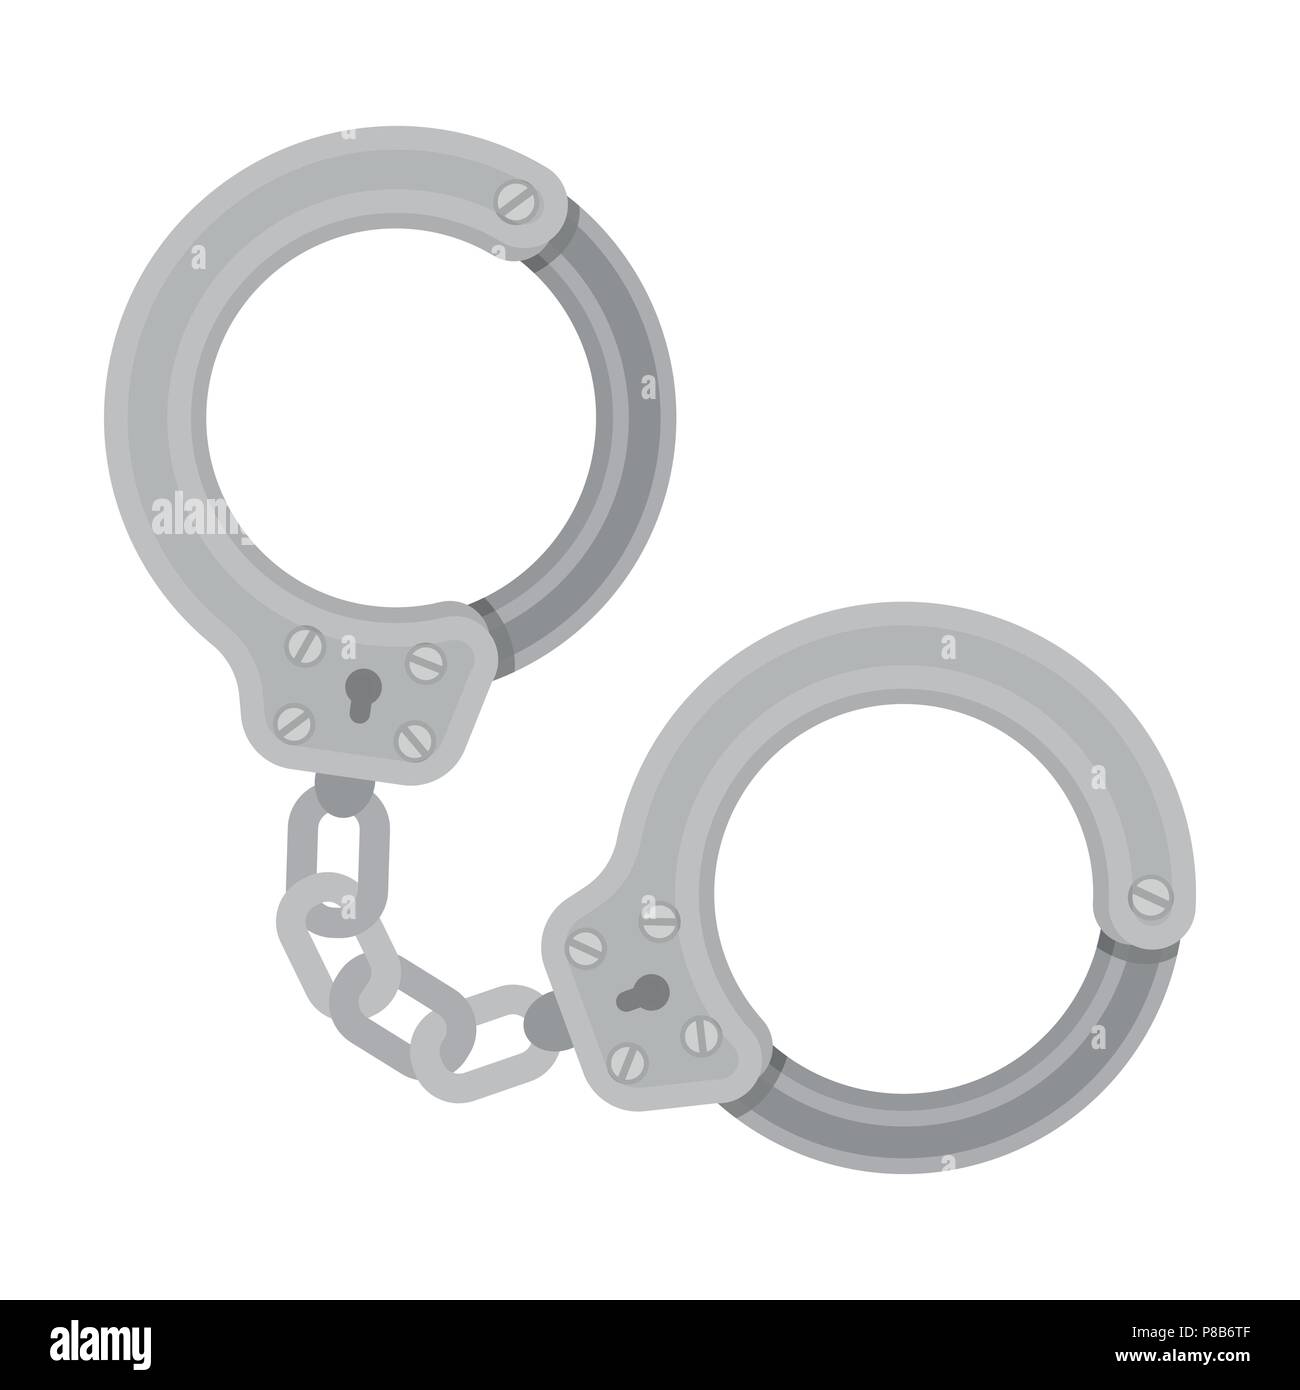 Metall Handschellen für die ingewahrsamnahme Verbrecher. Outfit eines  Polizisten. Gefängnis einzelnen Symbol in Schwarzweiß-Stil vektor Symbol  lieferbar web Abbildung Stock-Vektorgrafik - Alamy